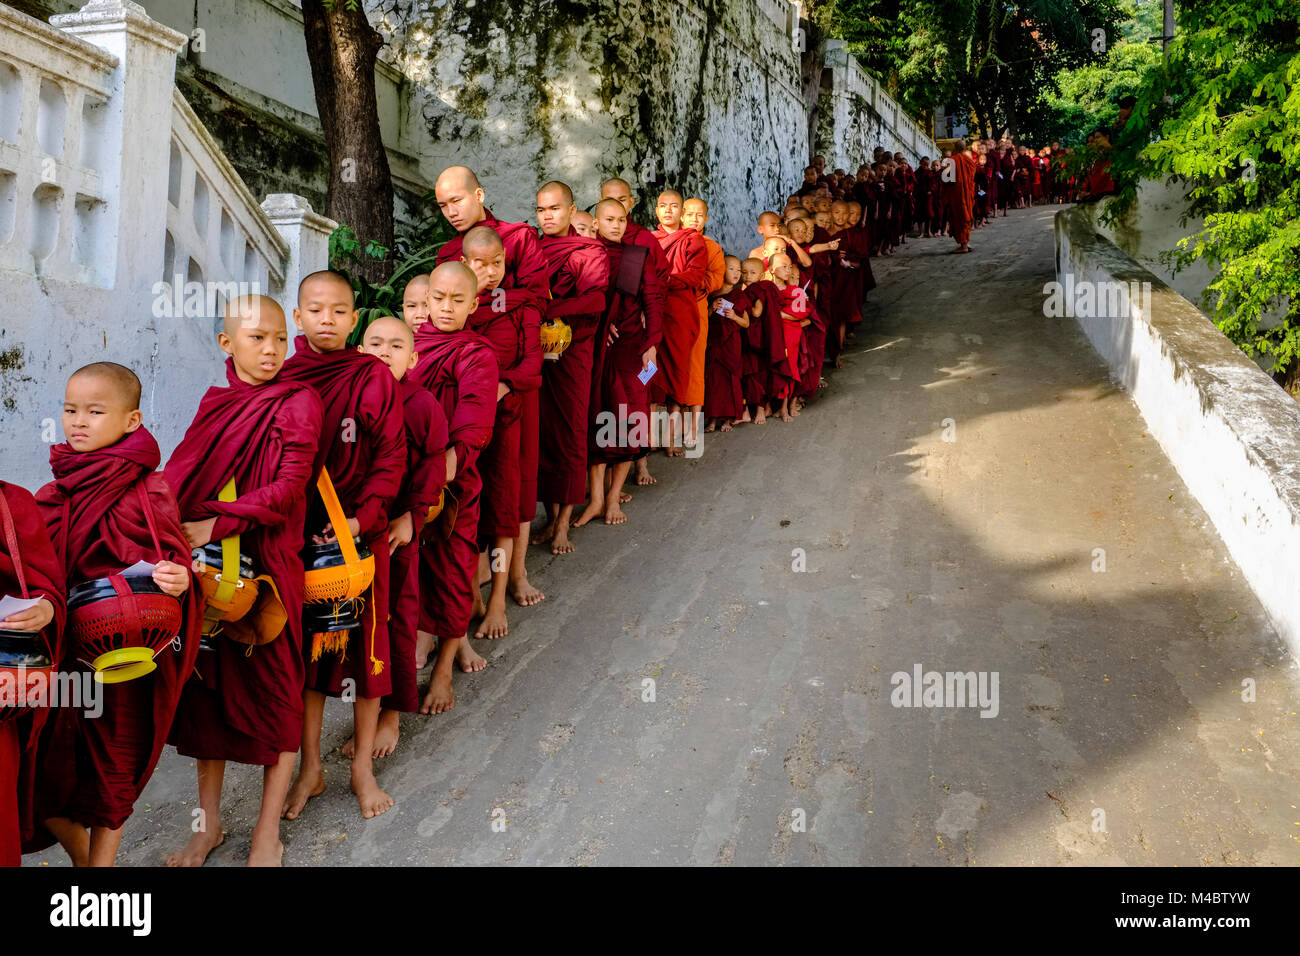 Les moines bouddhistes font la file dans une longue rangée de recevoir des dons dans un monastère Banque D'Images